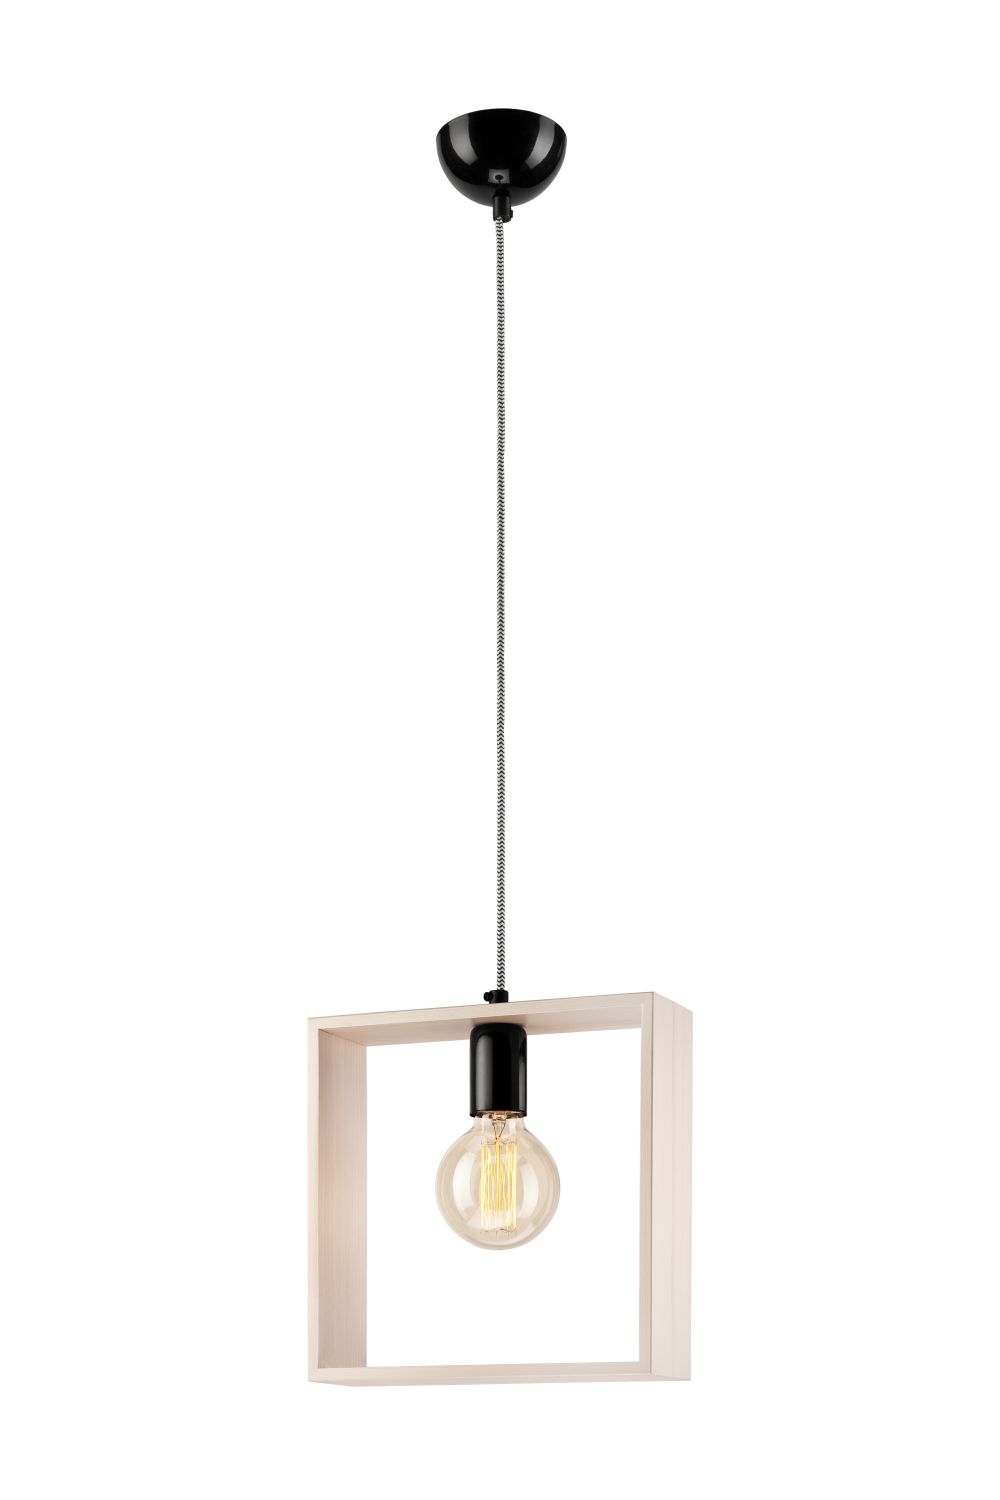 Moderne Pendelleuchte Holz eckig Esstisch Lampe